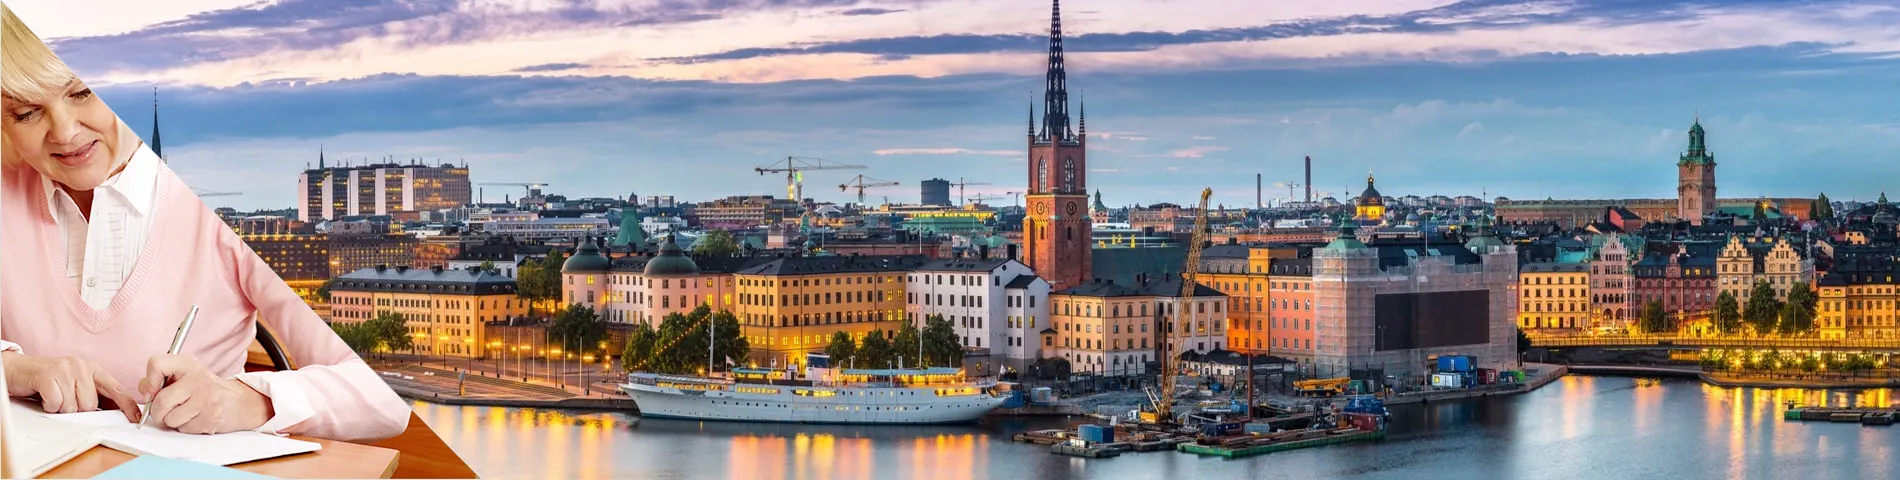 Стокгольм - Курси для людей зрілого віку (50+)